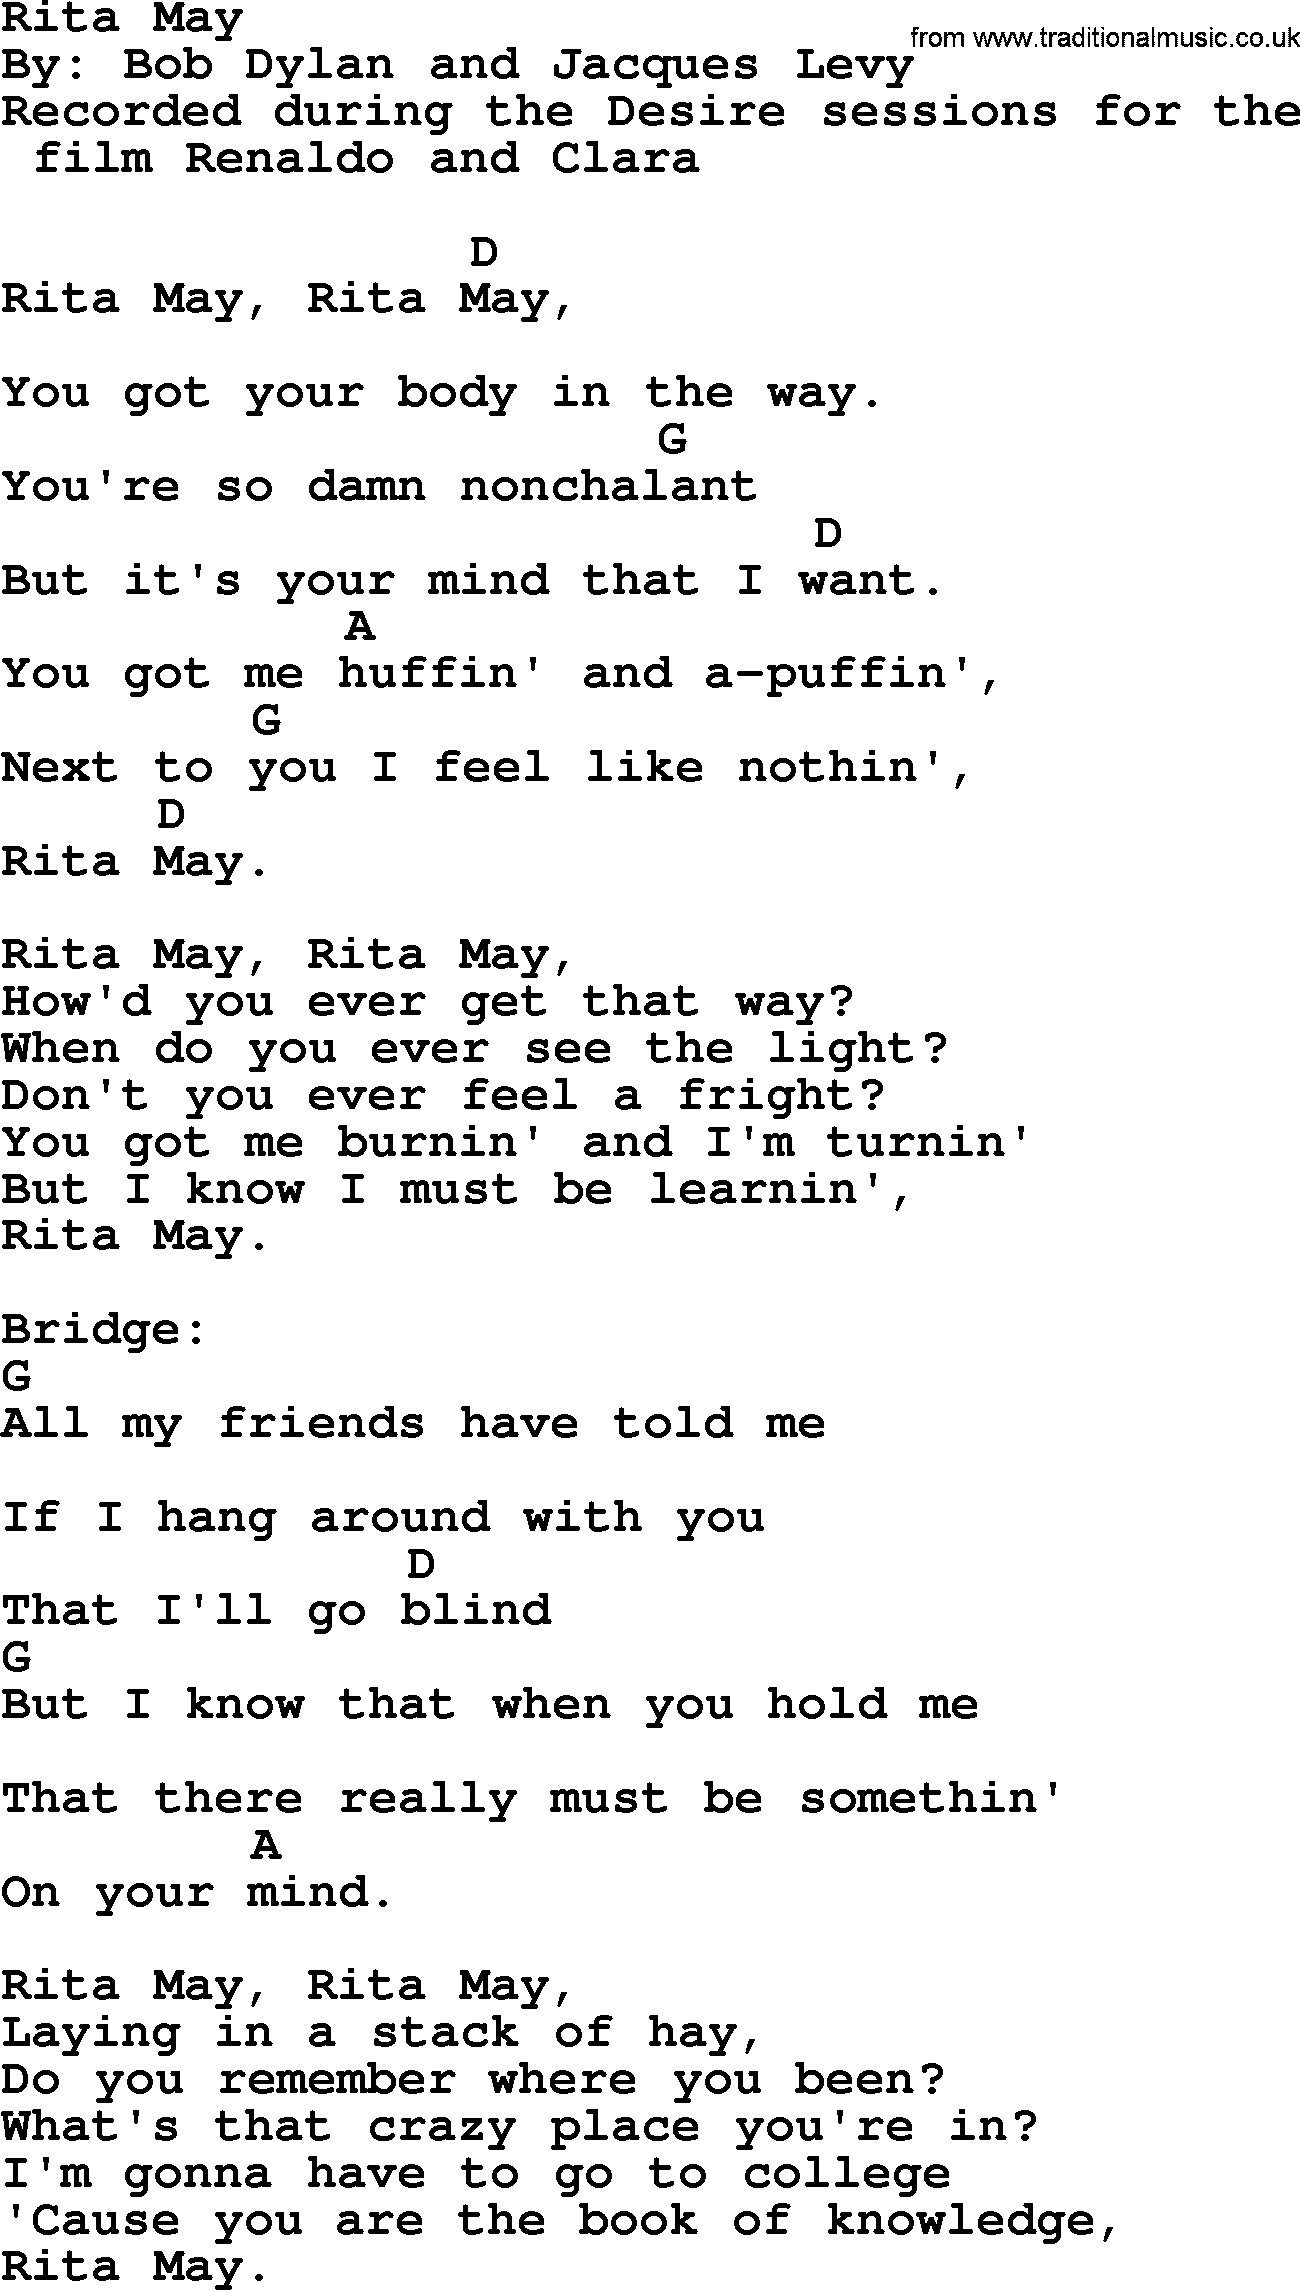 Bob Dylan song, lyrics with chords - Rita May